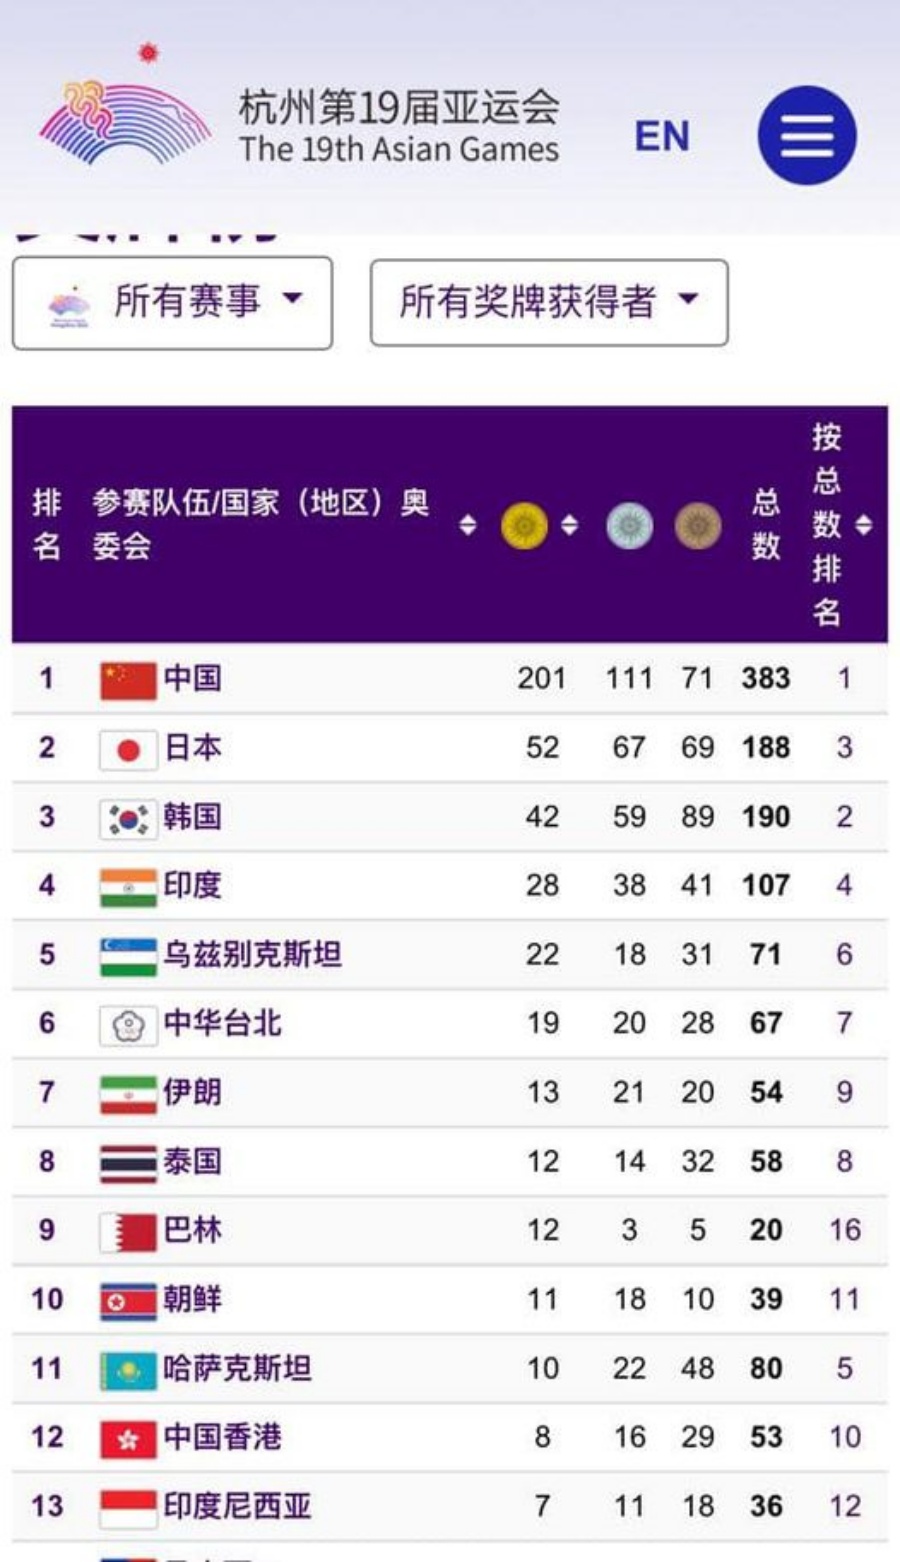 港队以8金16银29铜位排第12位。 杨润雄fb